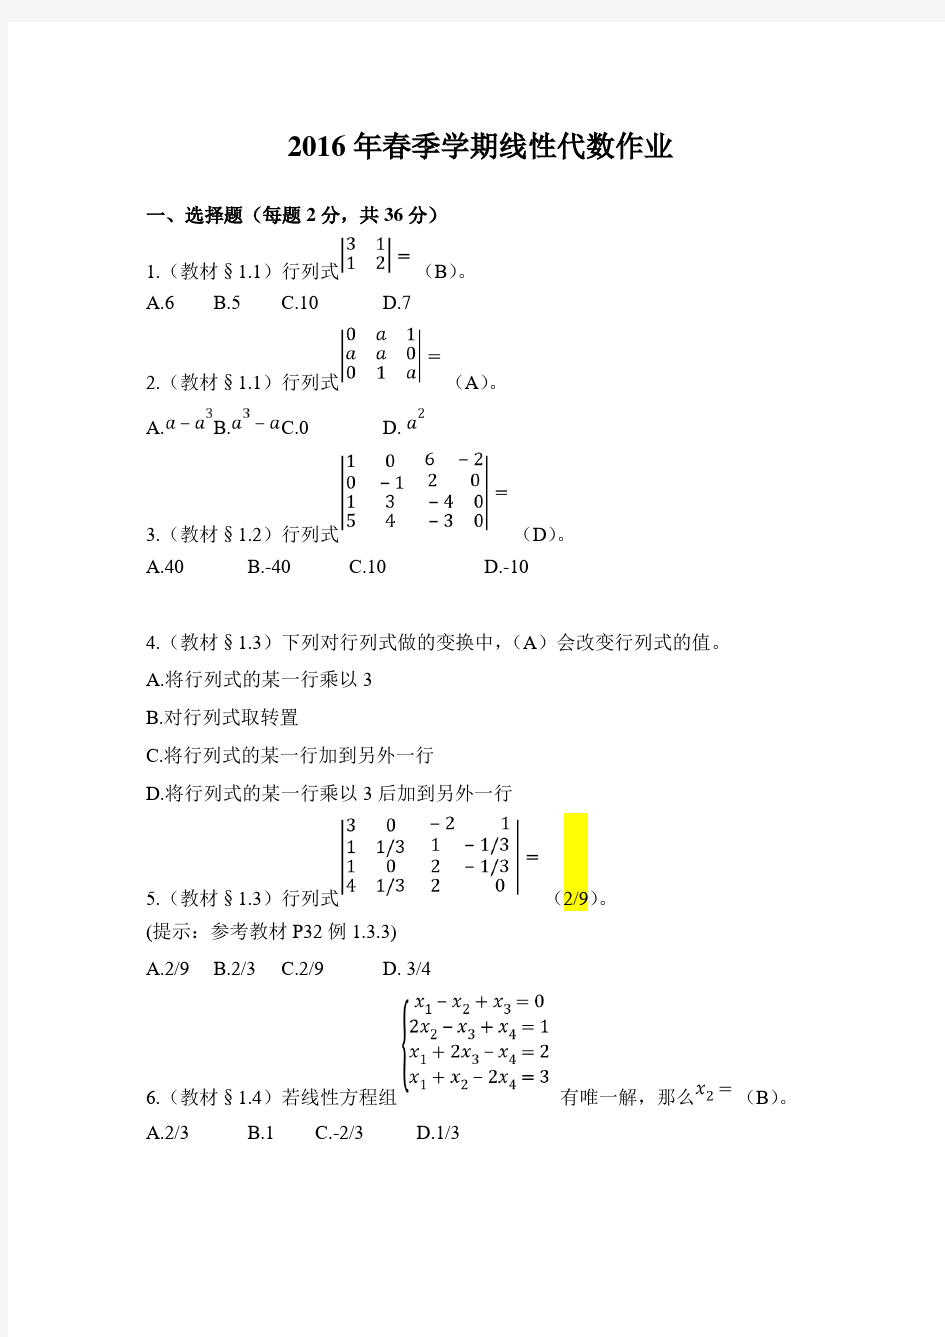 标准标准答案-北京大学2016年春季学期线性代数作业